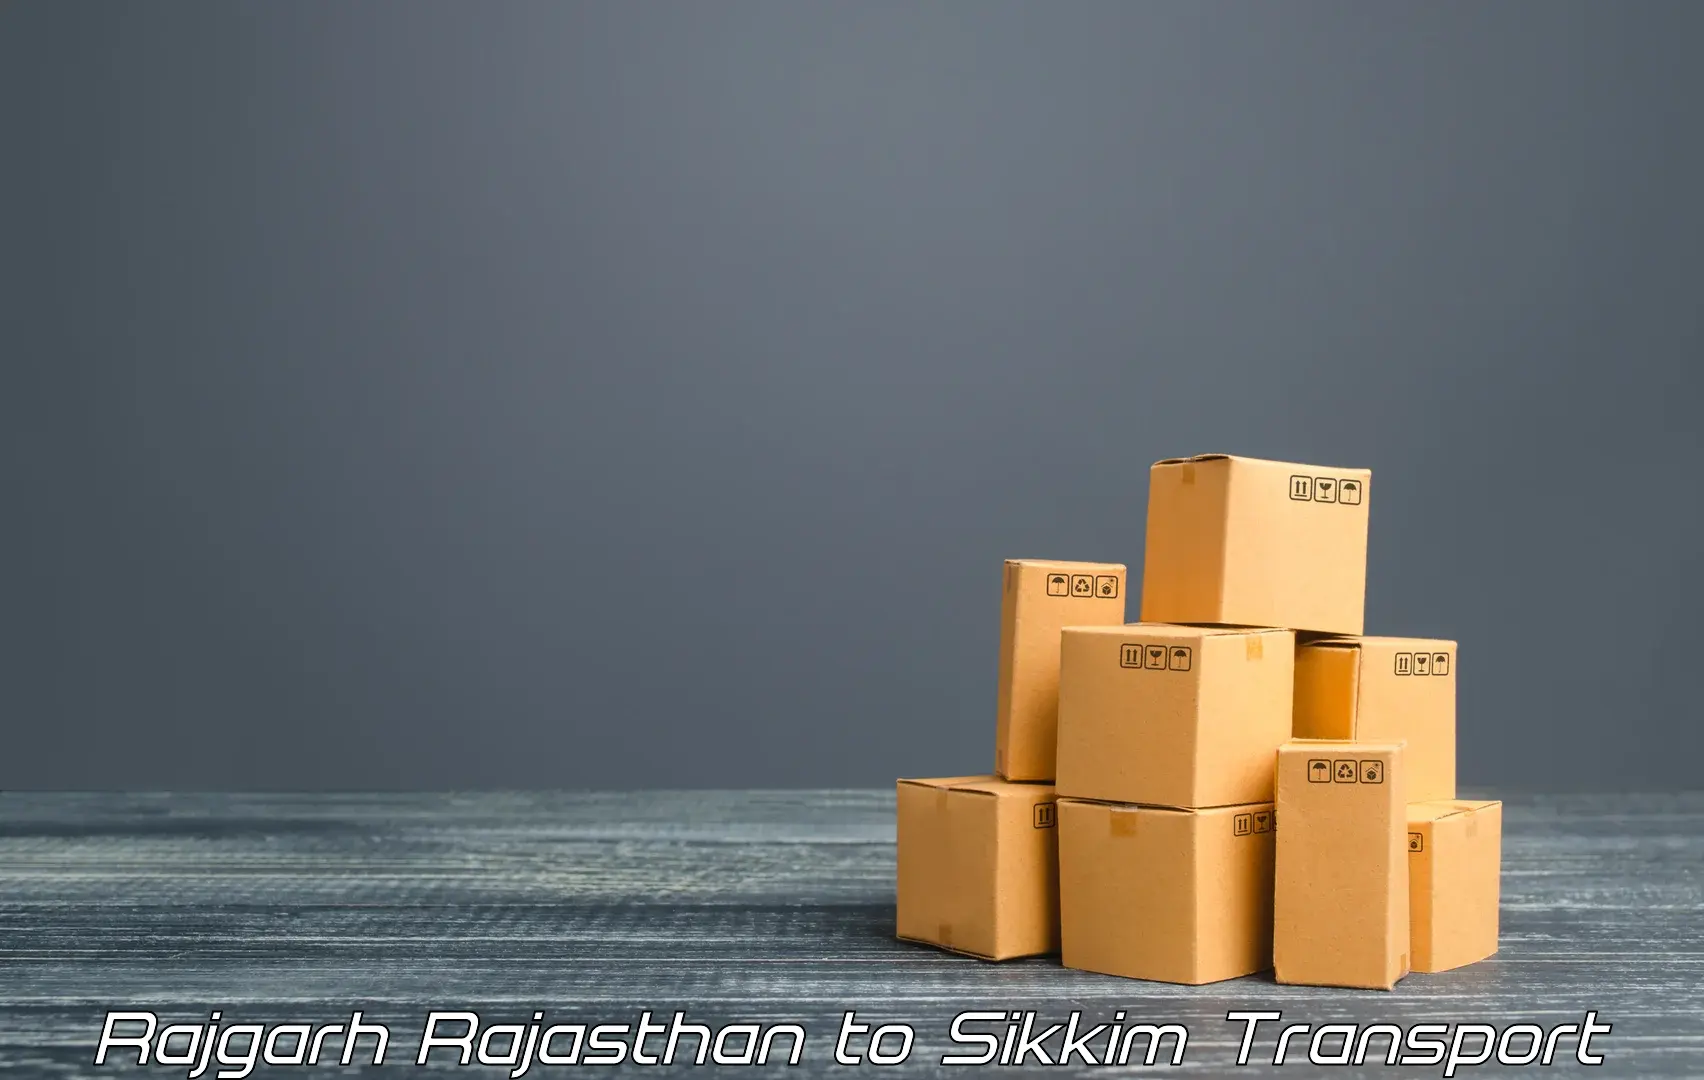 Online transport booking Rajgarh Rajasthan to Gangtok